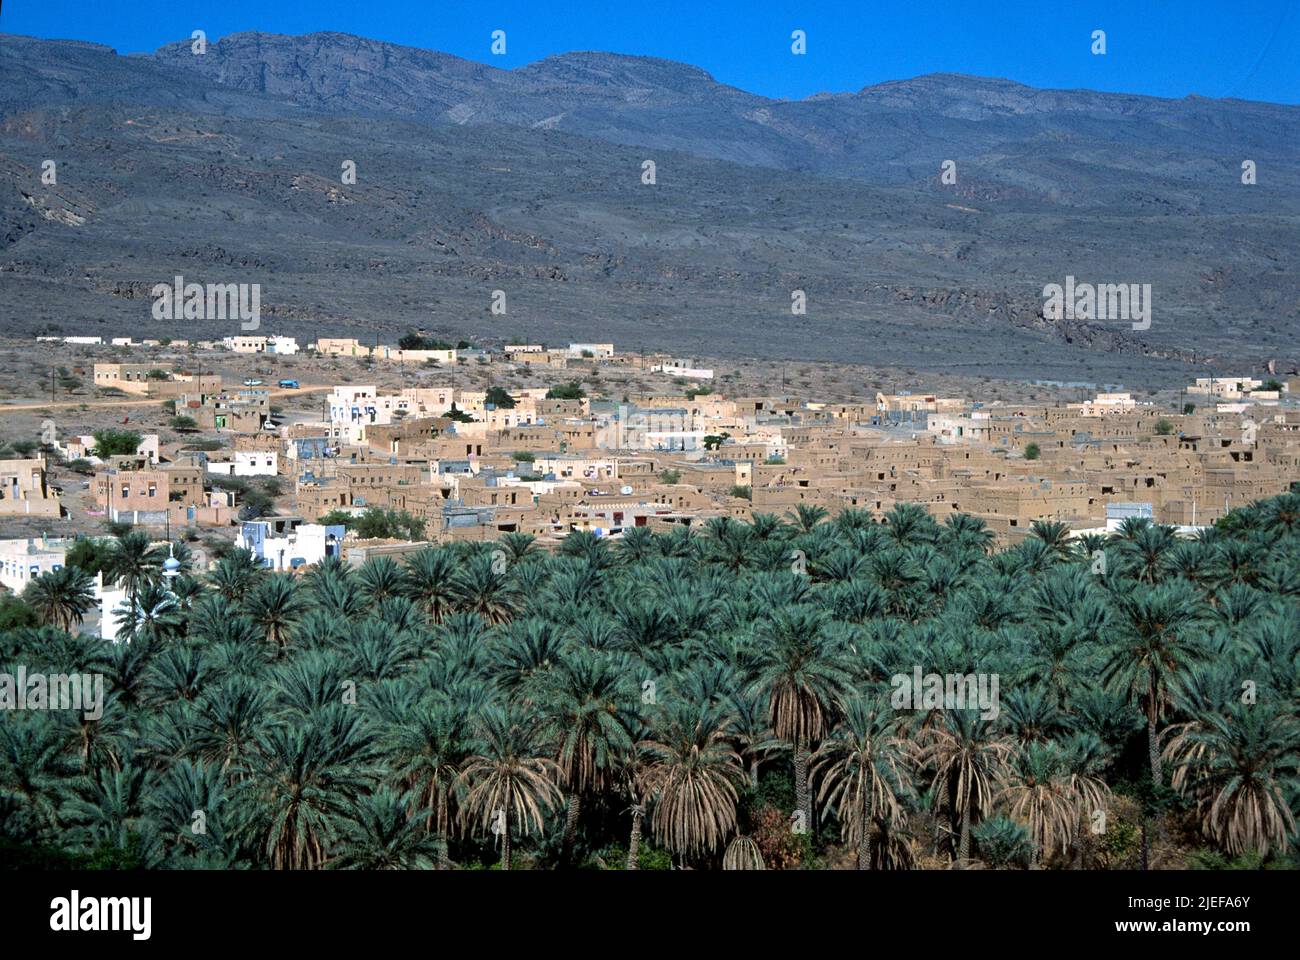 al-Hamra, pueblo interior con palmeras datileras, Sultanato de Omán Foto de stock